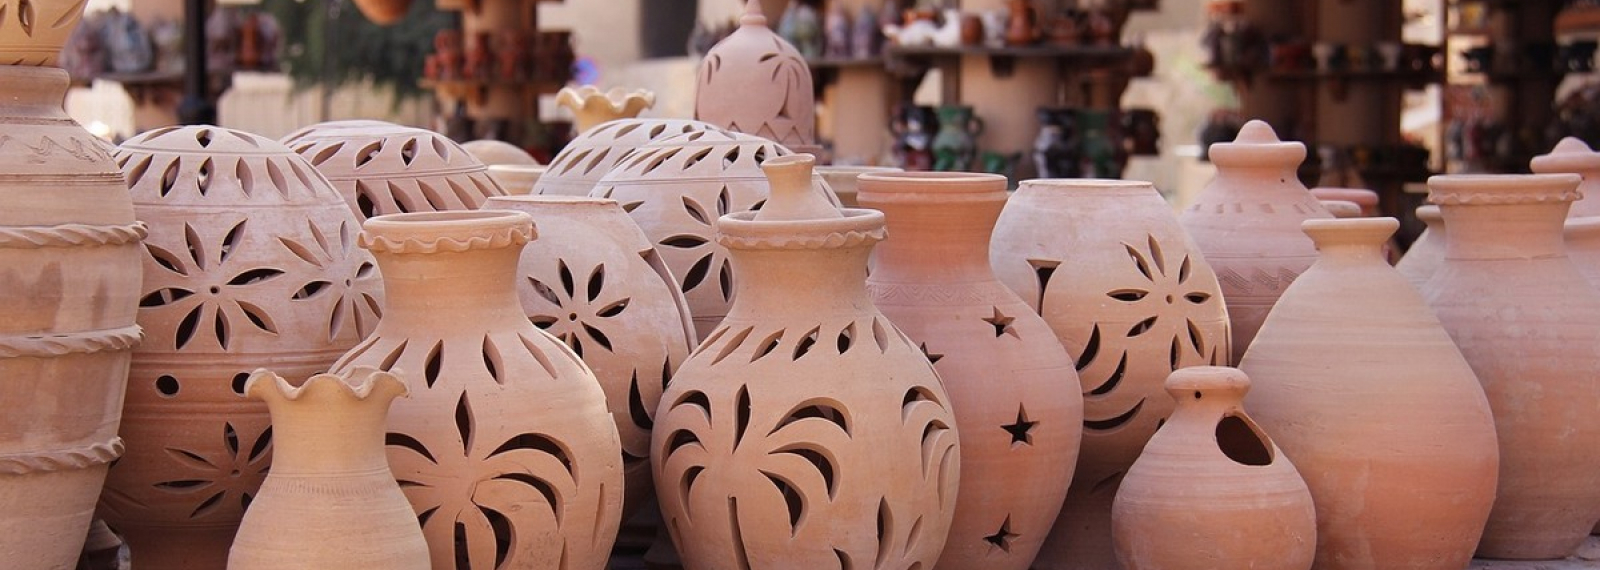 Pottery market in Mouriès